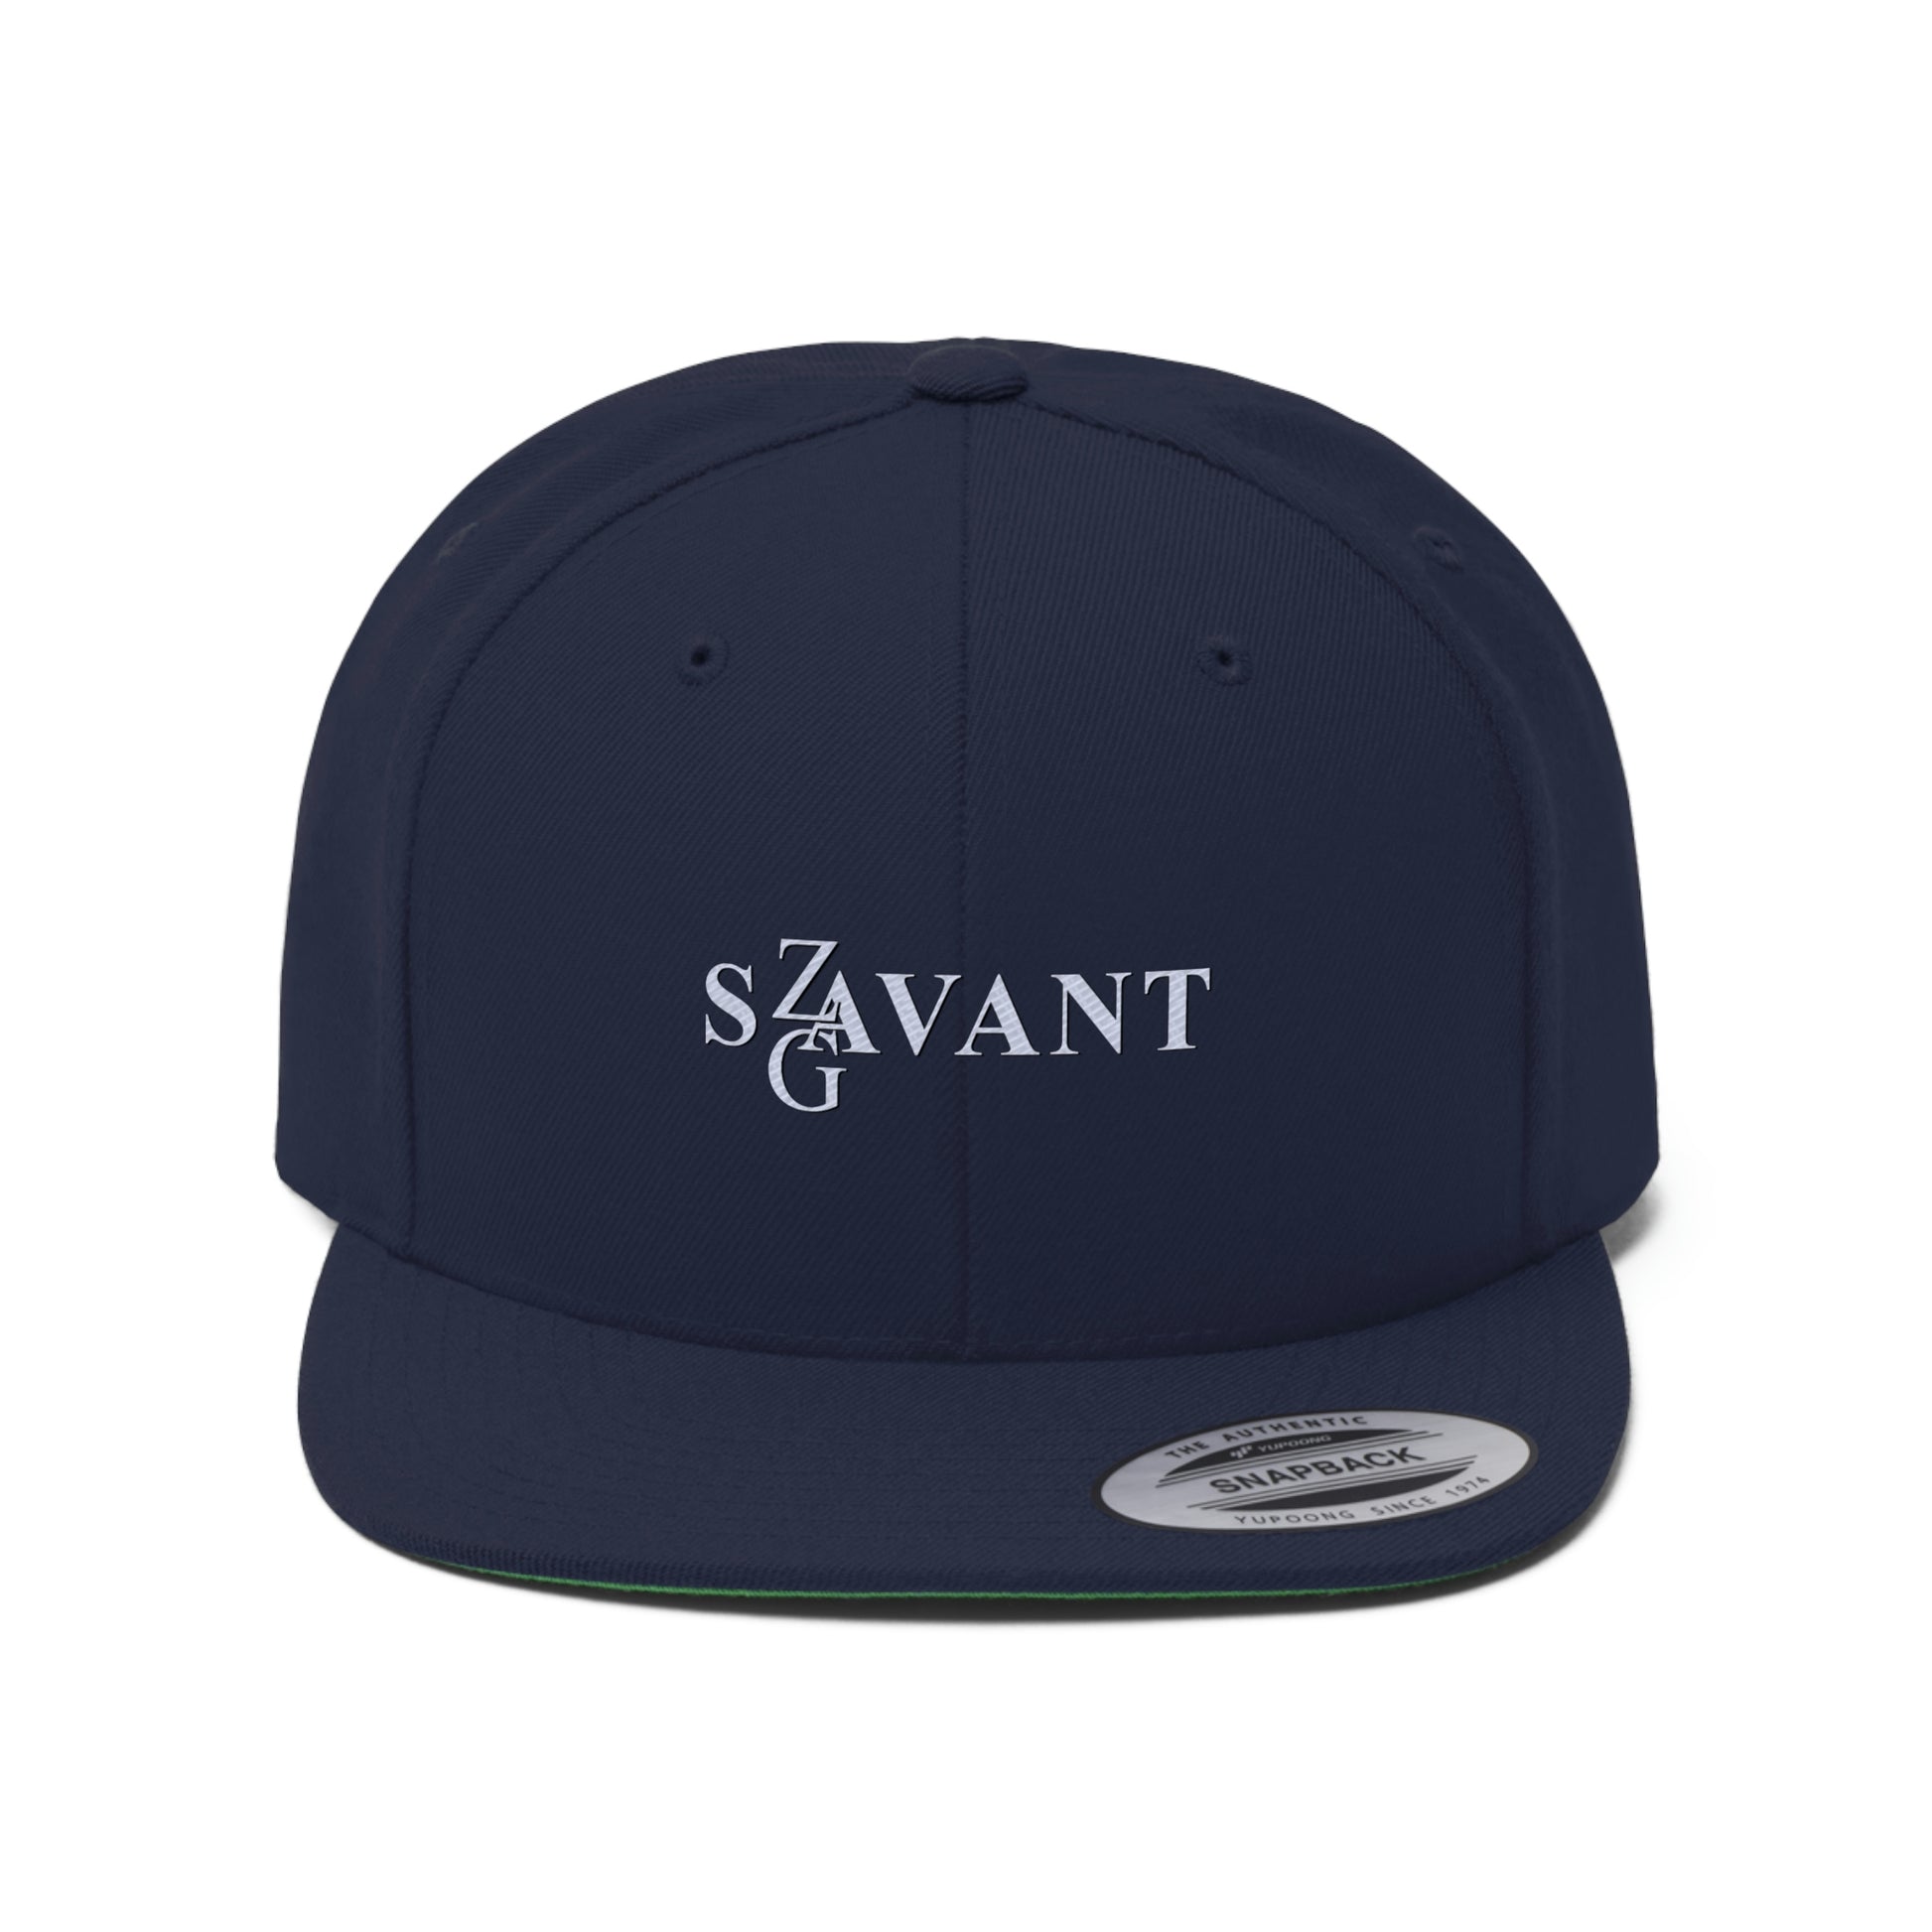 Zag Savant - Flat Bill Hat